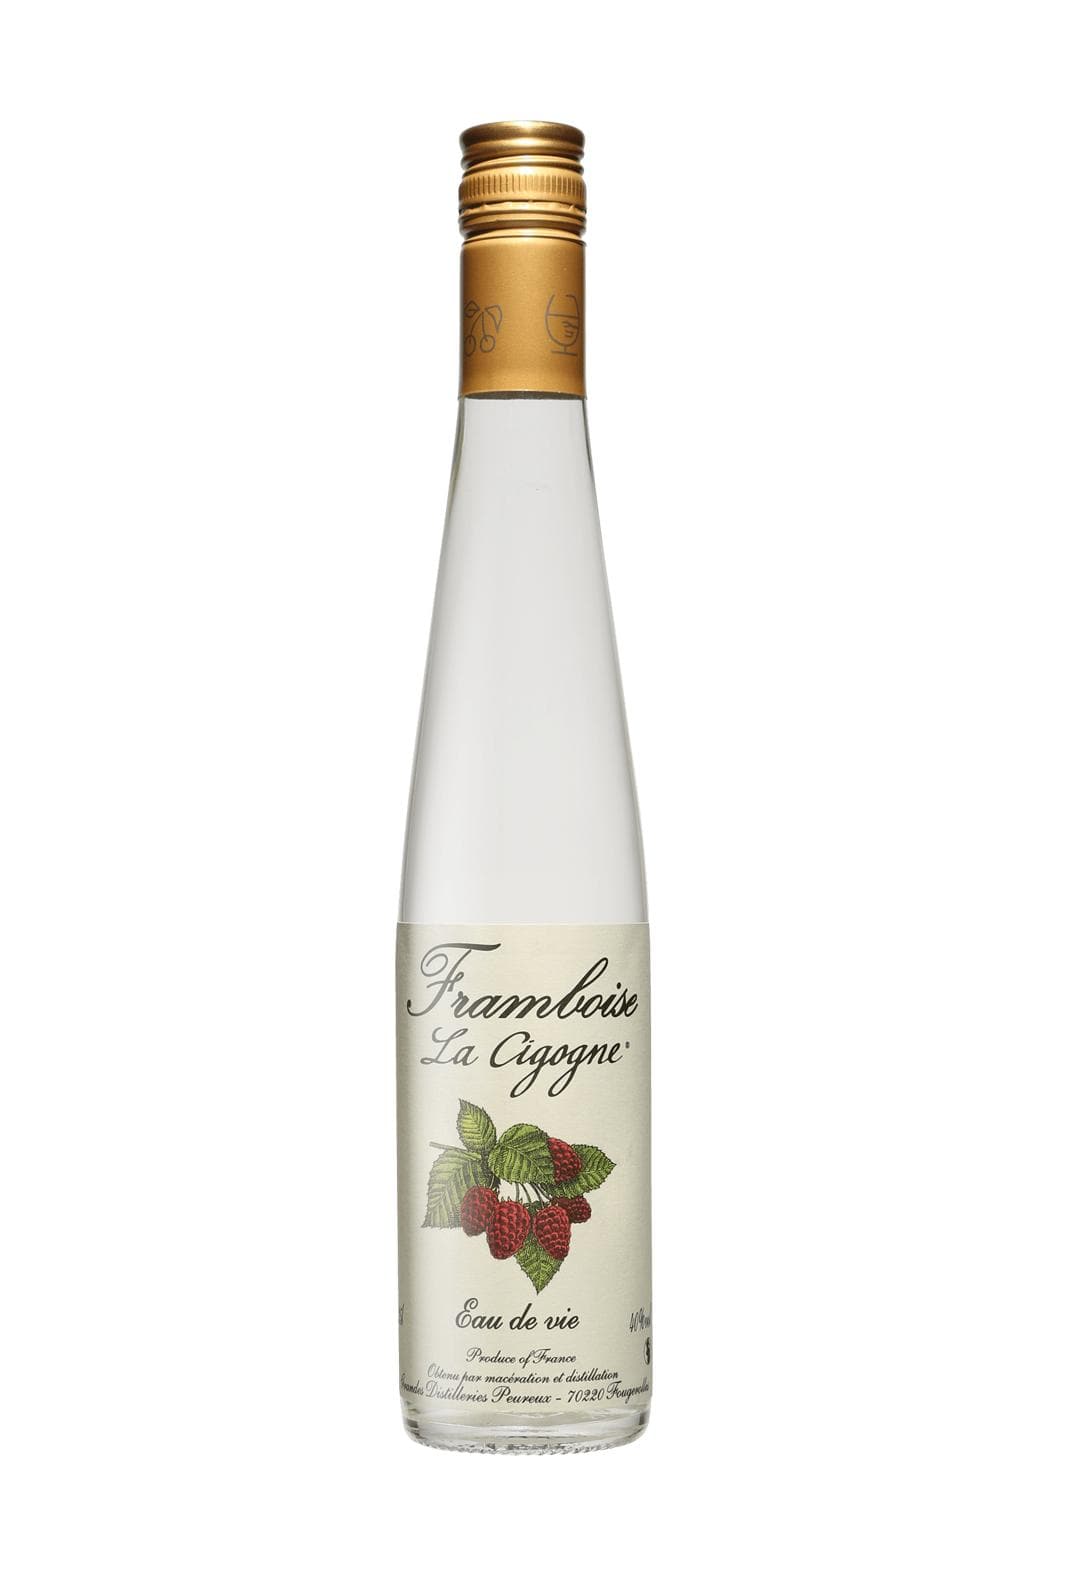 Peureux 'La Cigogne' Eau de Vie Framboise (Raspberry spirit) 40% 350ml | Liqueurs | Shop online at Spirits of France